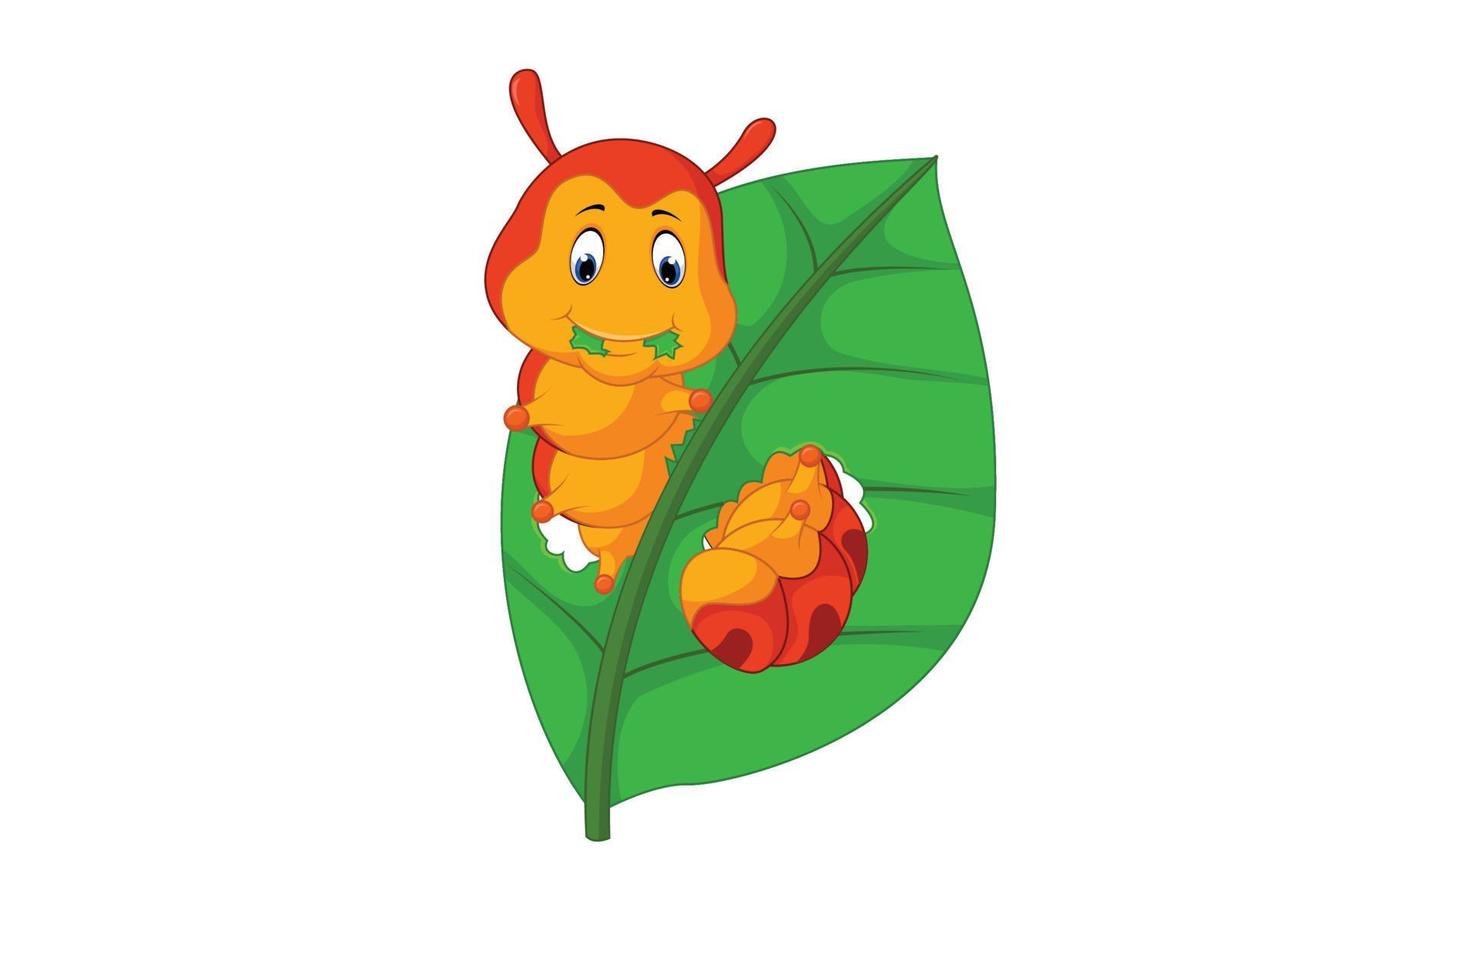 Cute caterpillar cartoon vector